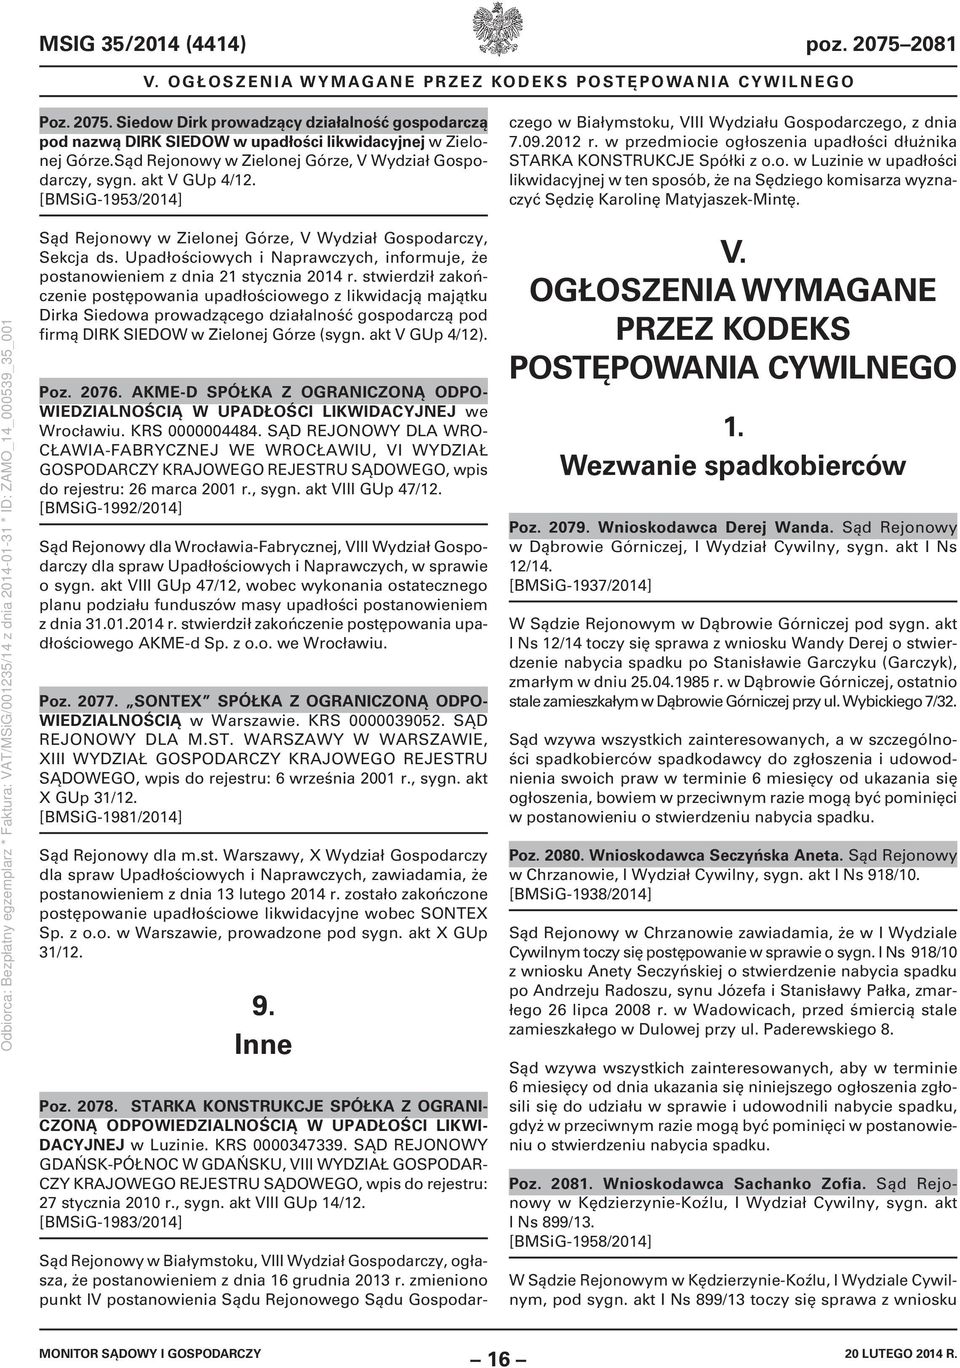 zmieniono punkt IV postanowienia Sądu Rejonowego Sądu Gospodarczego w Białymstoku, VIII Wydziału Gospodarczego, z dnia 7.09.2012 r.